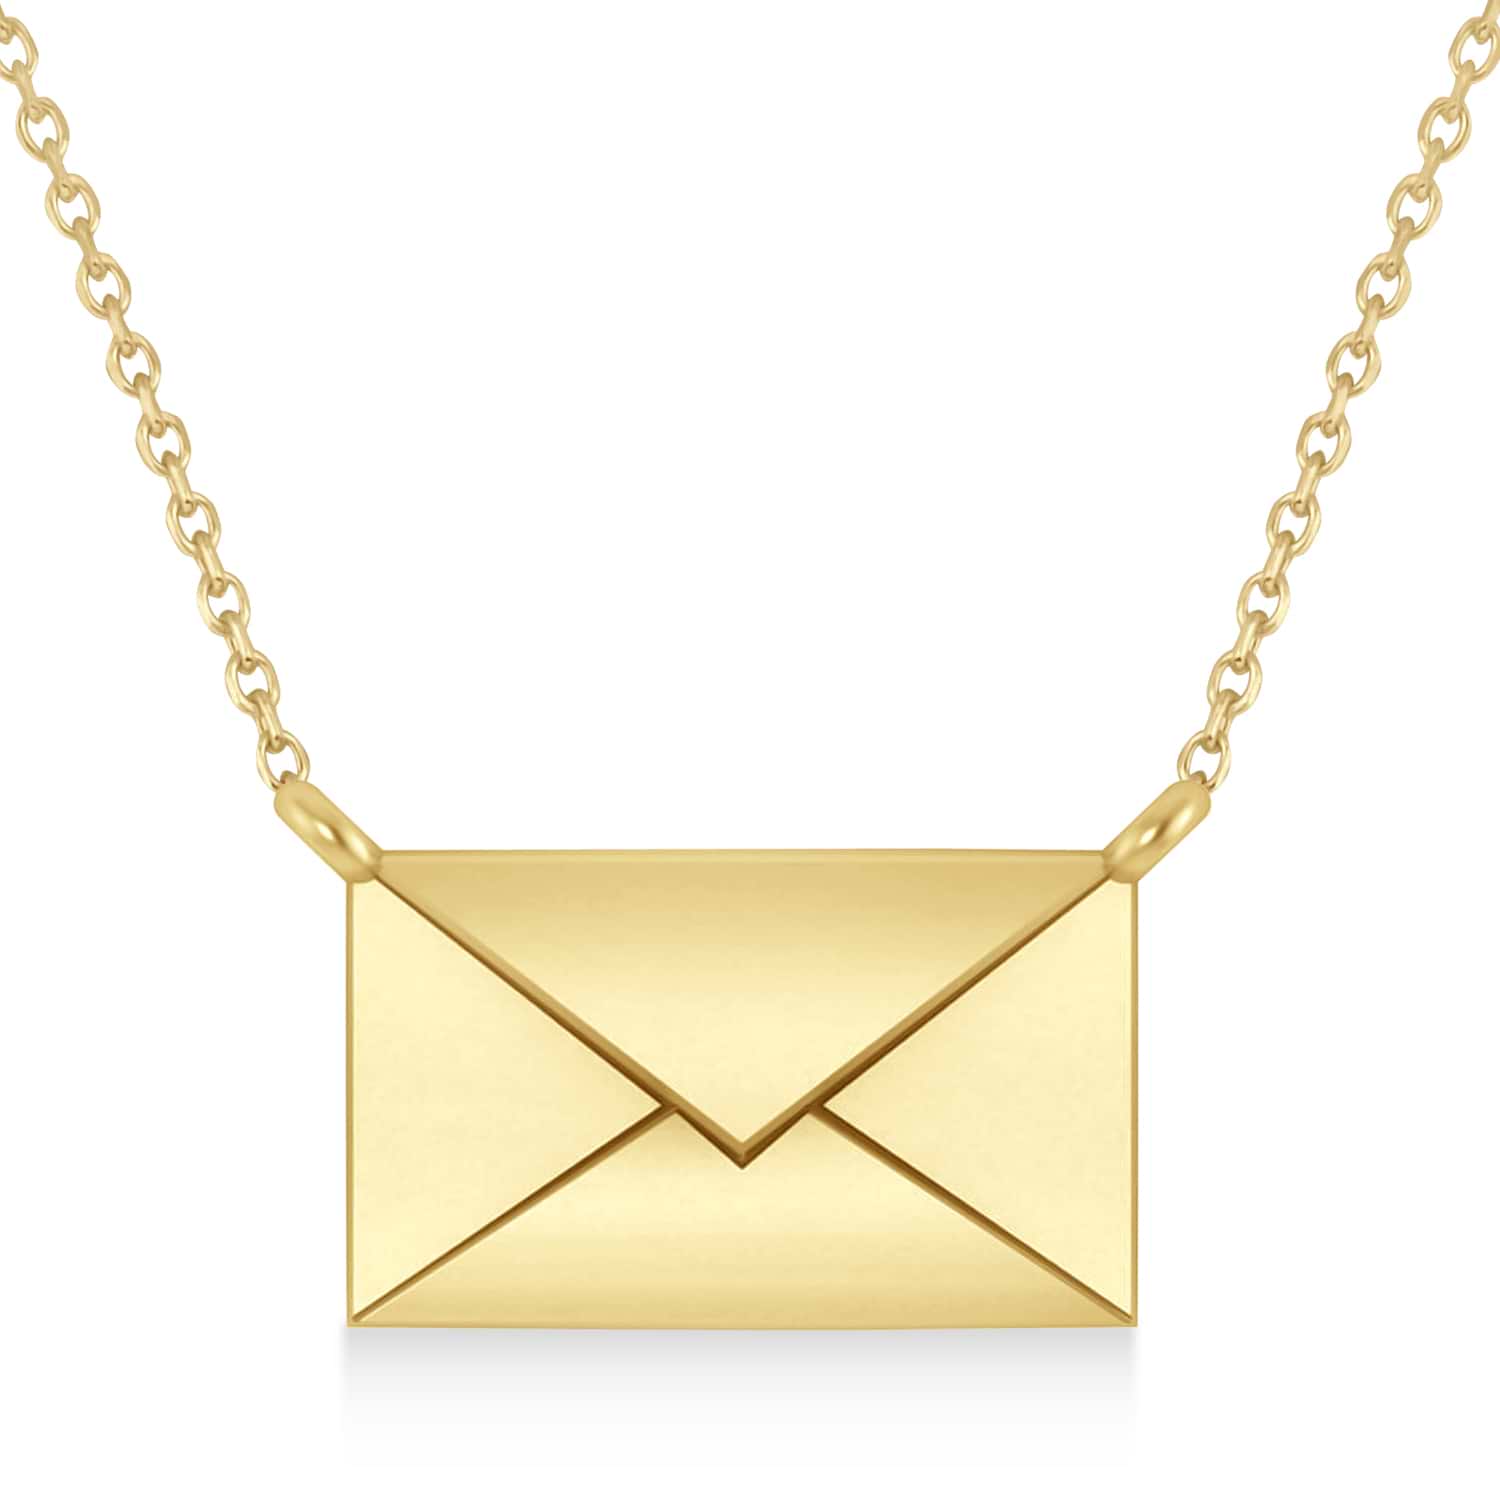 Engravable Love Letter Envelope Pendant Necklace 14k Yellow Gold